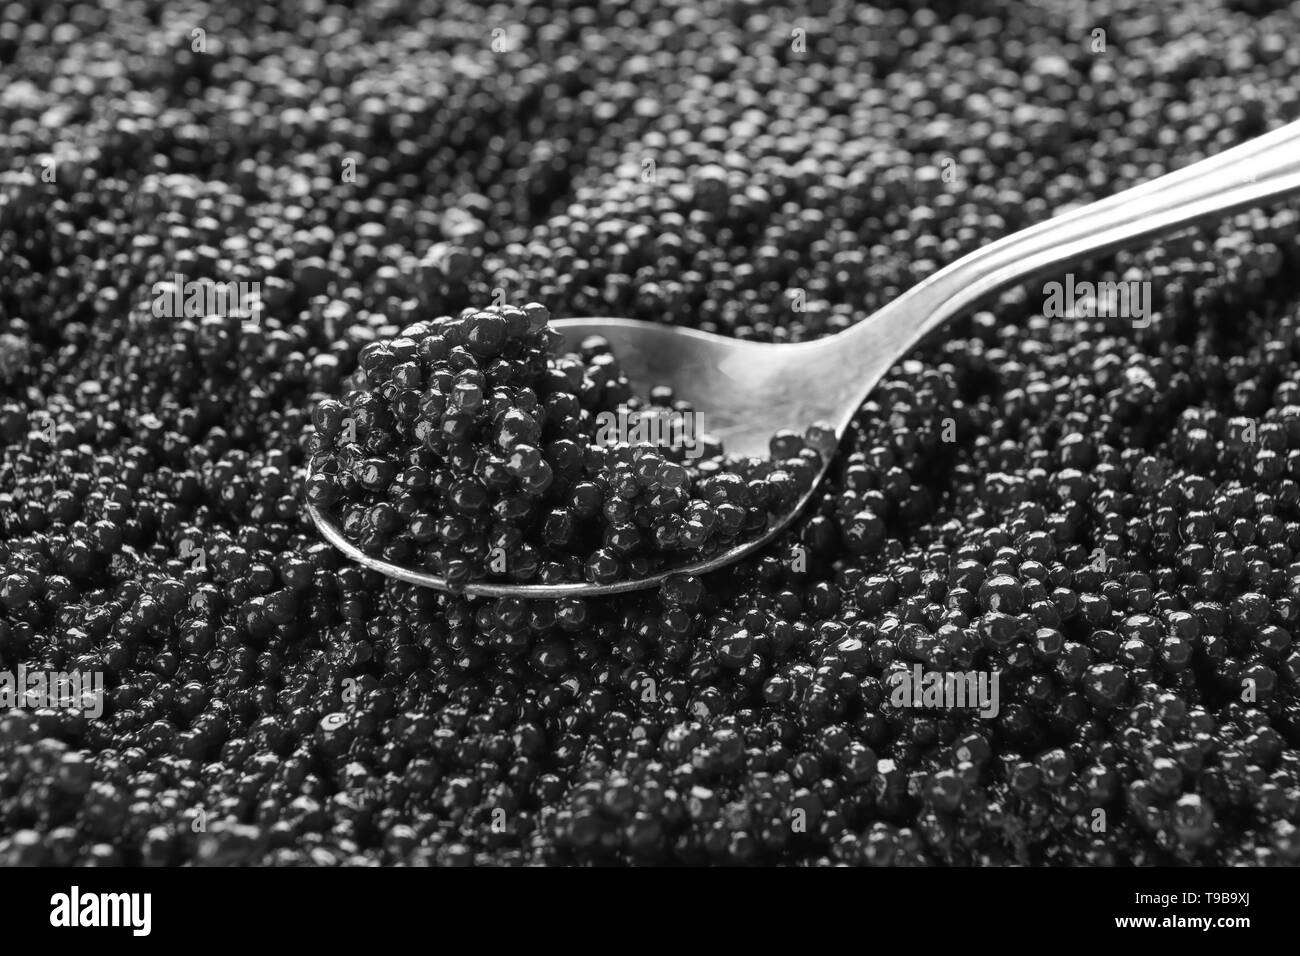 Osetra caviar Black and White Stock Photos & Images - Alamy